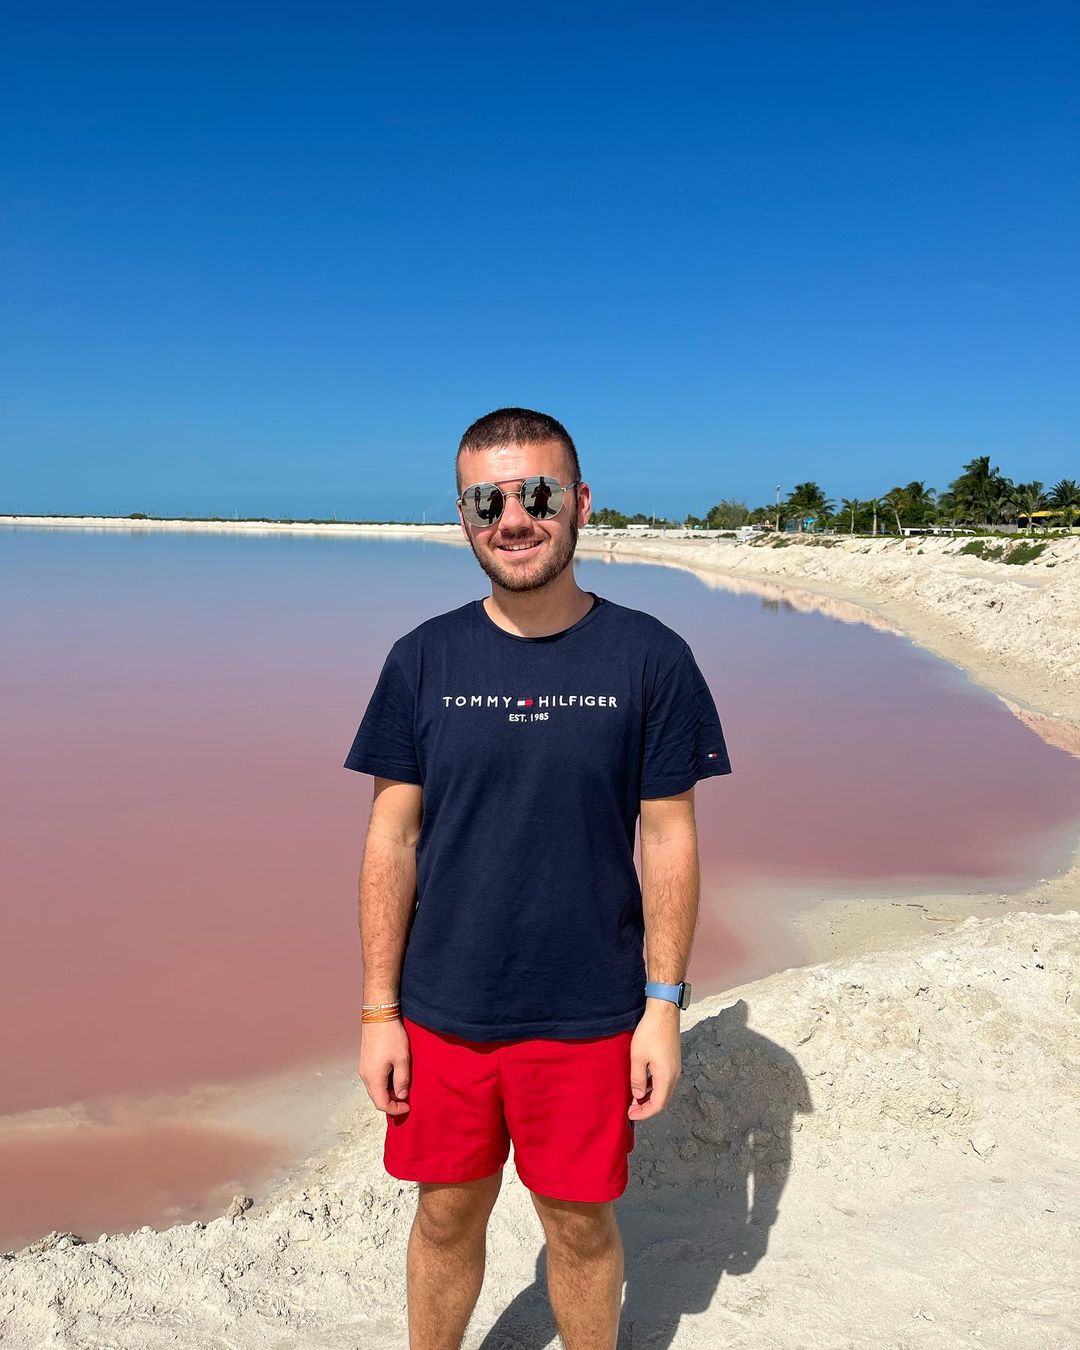 Las Coloradas: la laguna rosa de Yucatán que debes conocer